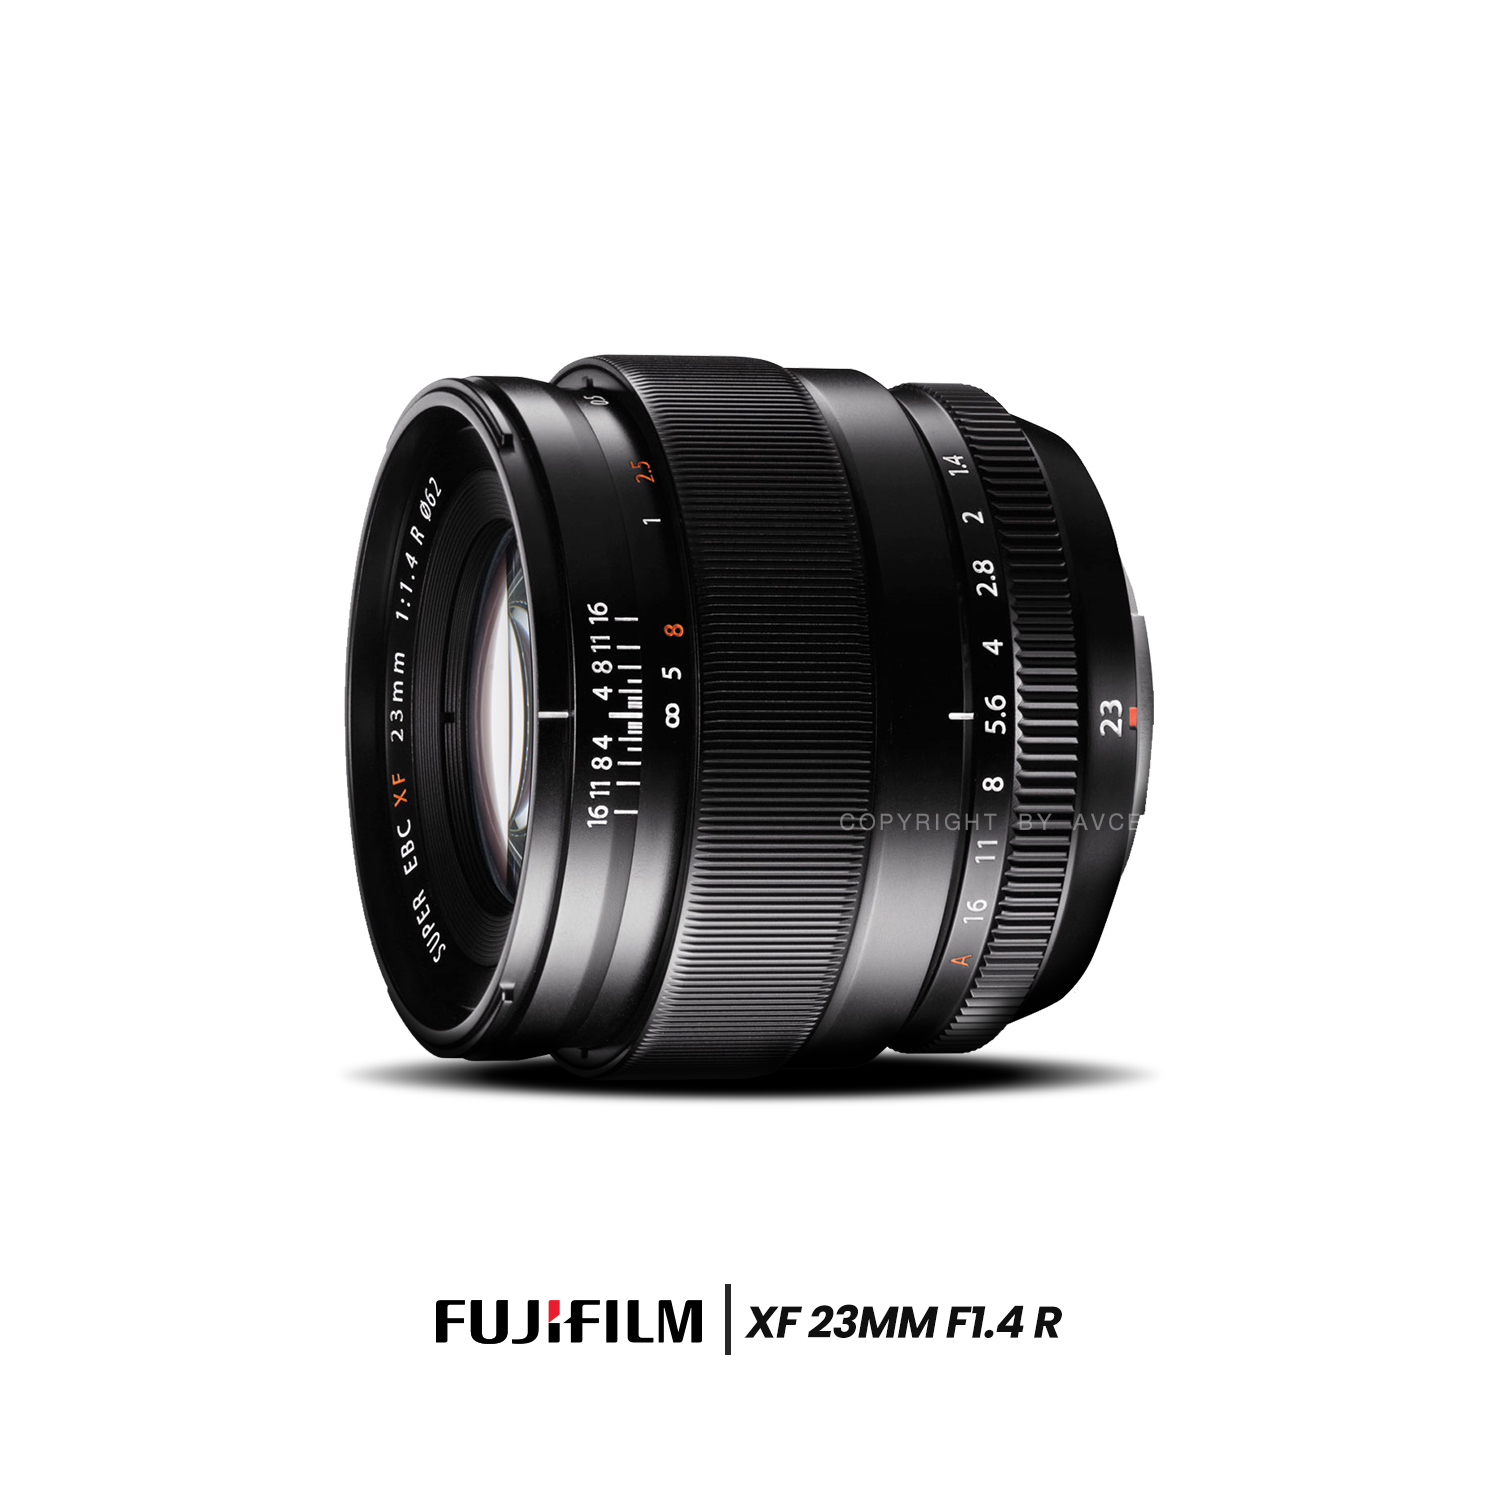 Fujifilm Lens XF 23 mm. F1.4 R